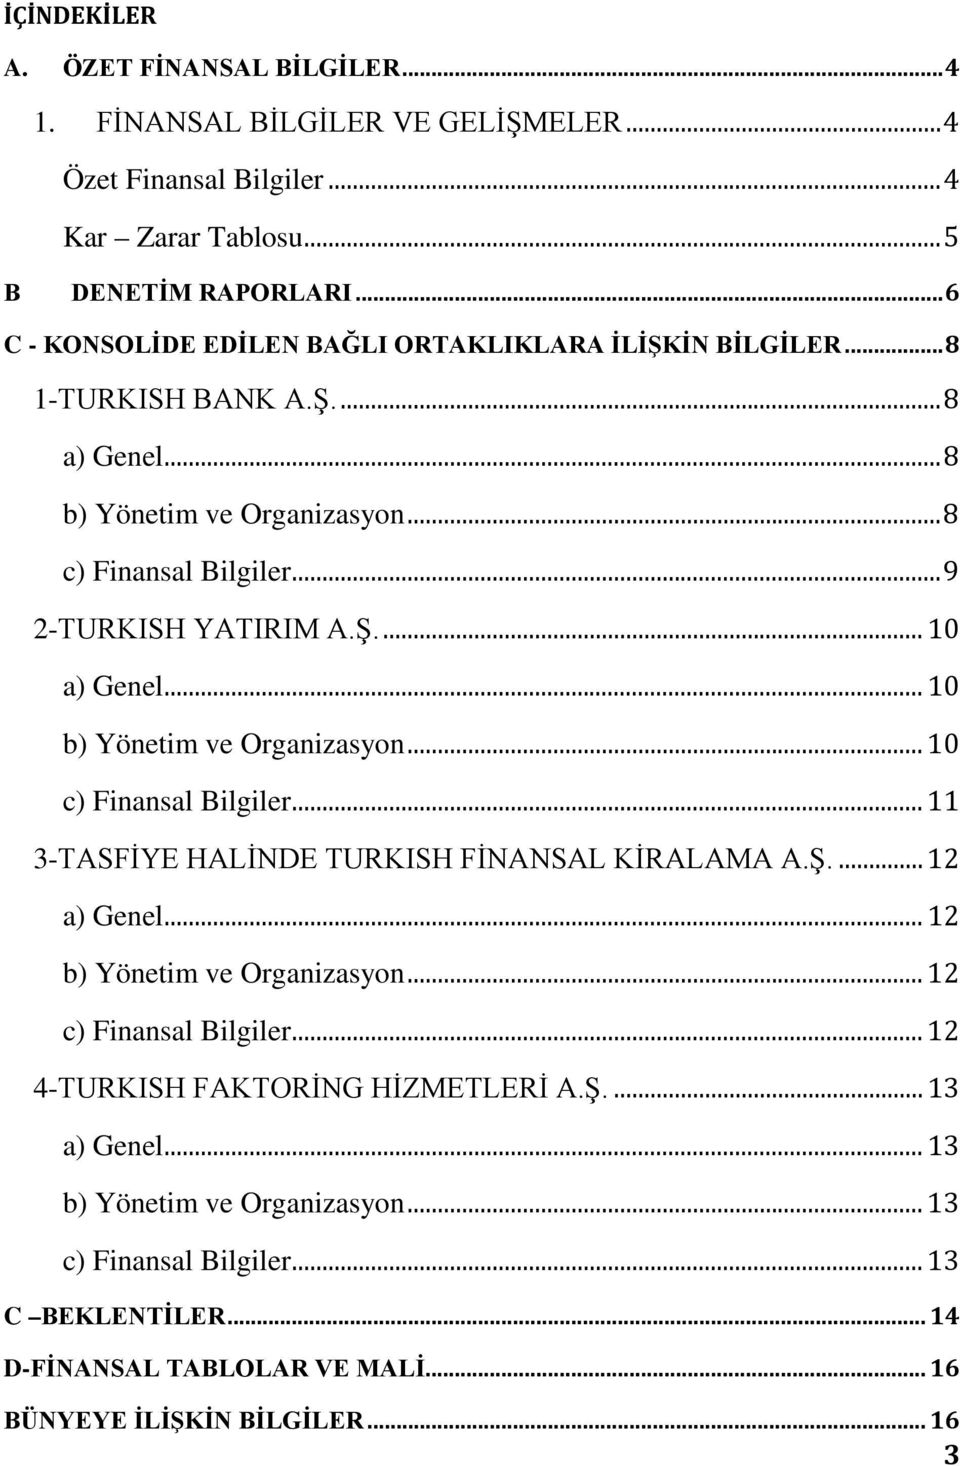 .. 10 b) Yönetim ve Organizasyon... 10 c) Finansal Bilgiler... 11 3-TASFİYE HALİNDE TURKISH FİNANSAL KİRALAMA A.Ş.... 12 a) Genel... 12 b) Yönetim ve Organizasyon... 12 c) Finansal Bilgiler.